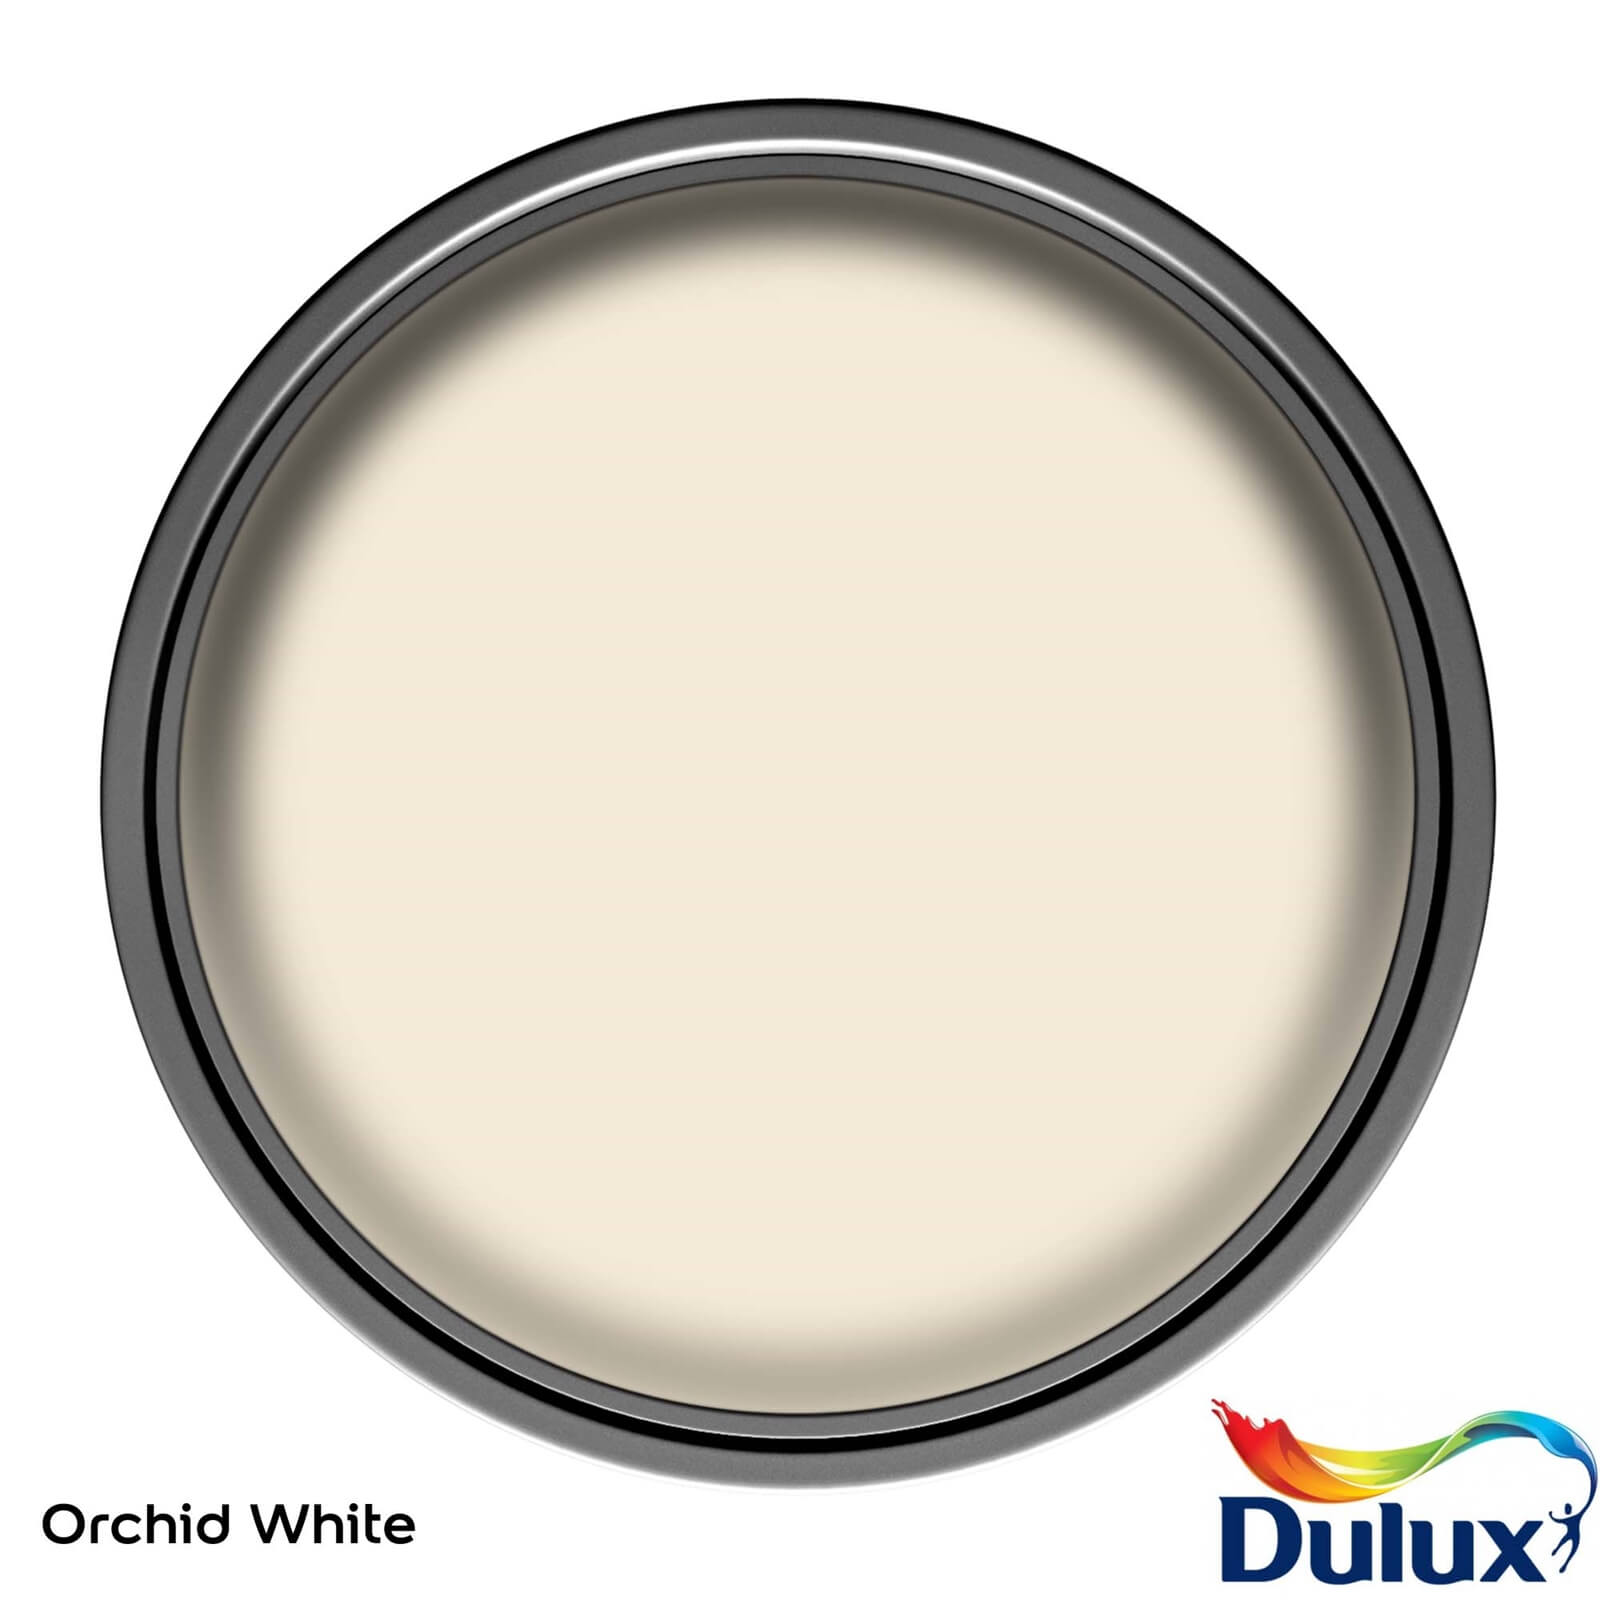 Dulux Silk Emulsion Paint Orchid White - 5L